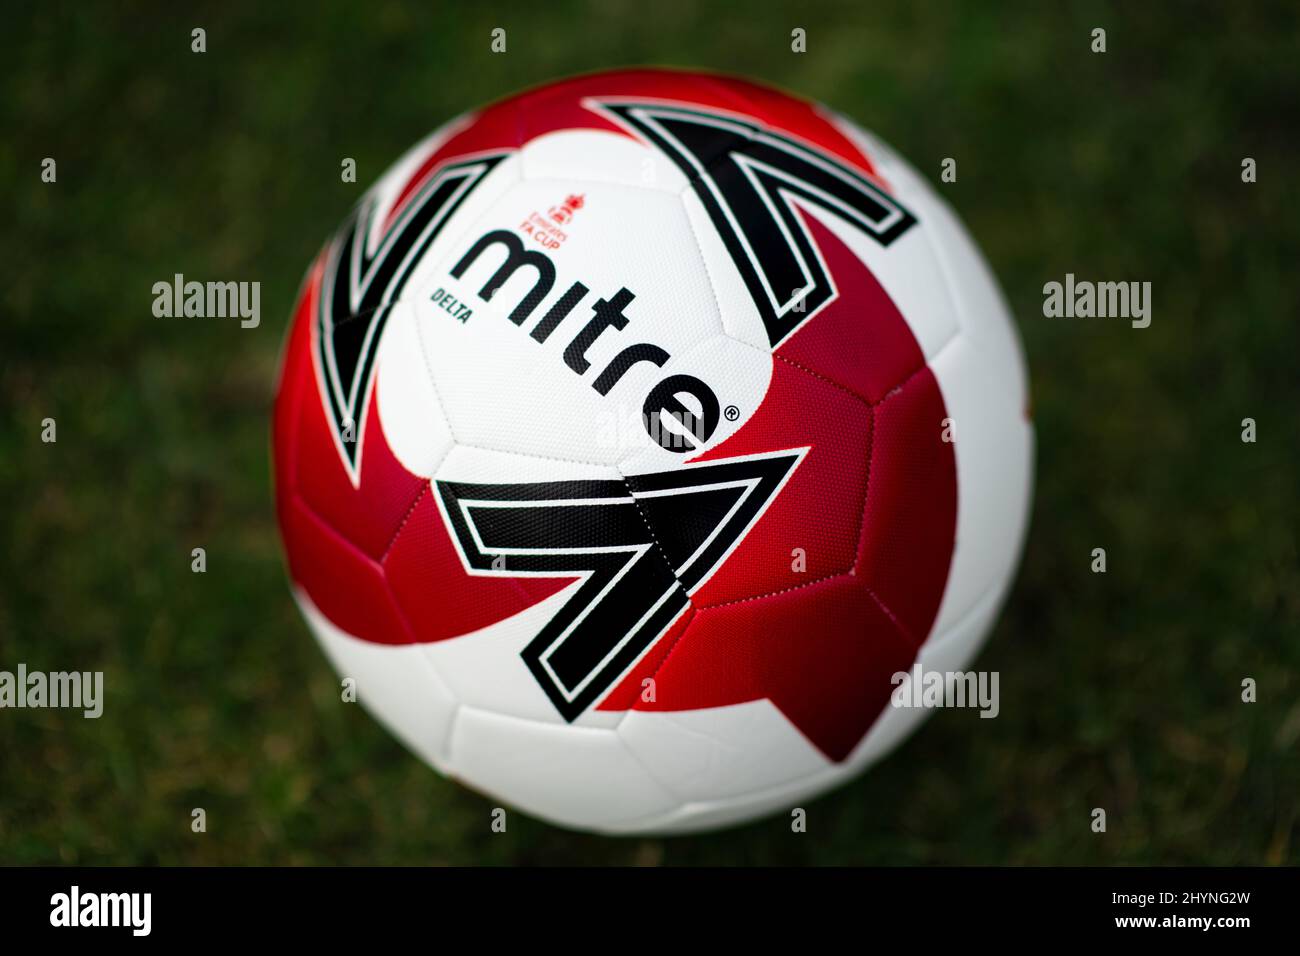 Delta angolo max. Calcio ufficiale della fa Cup Emirates. Foto Stock